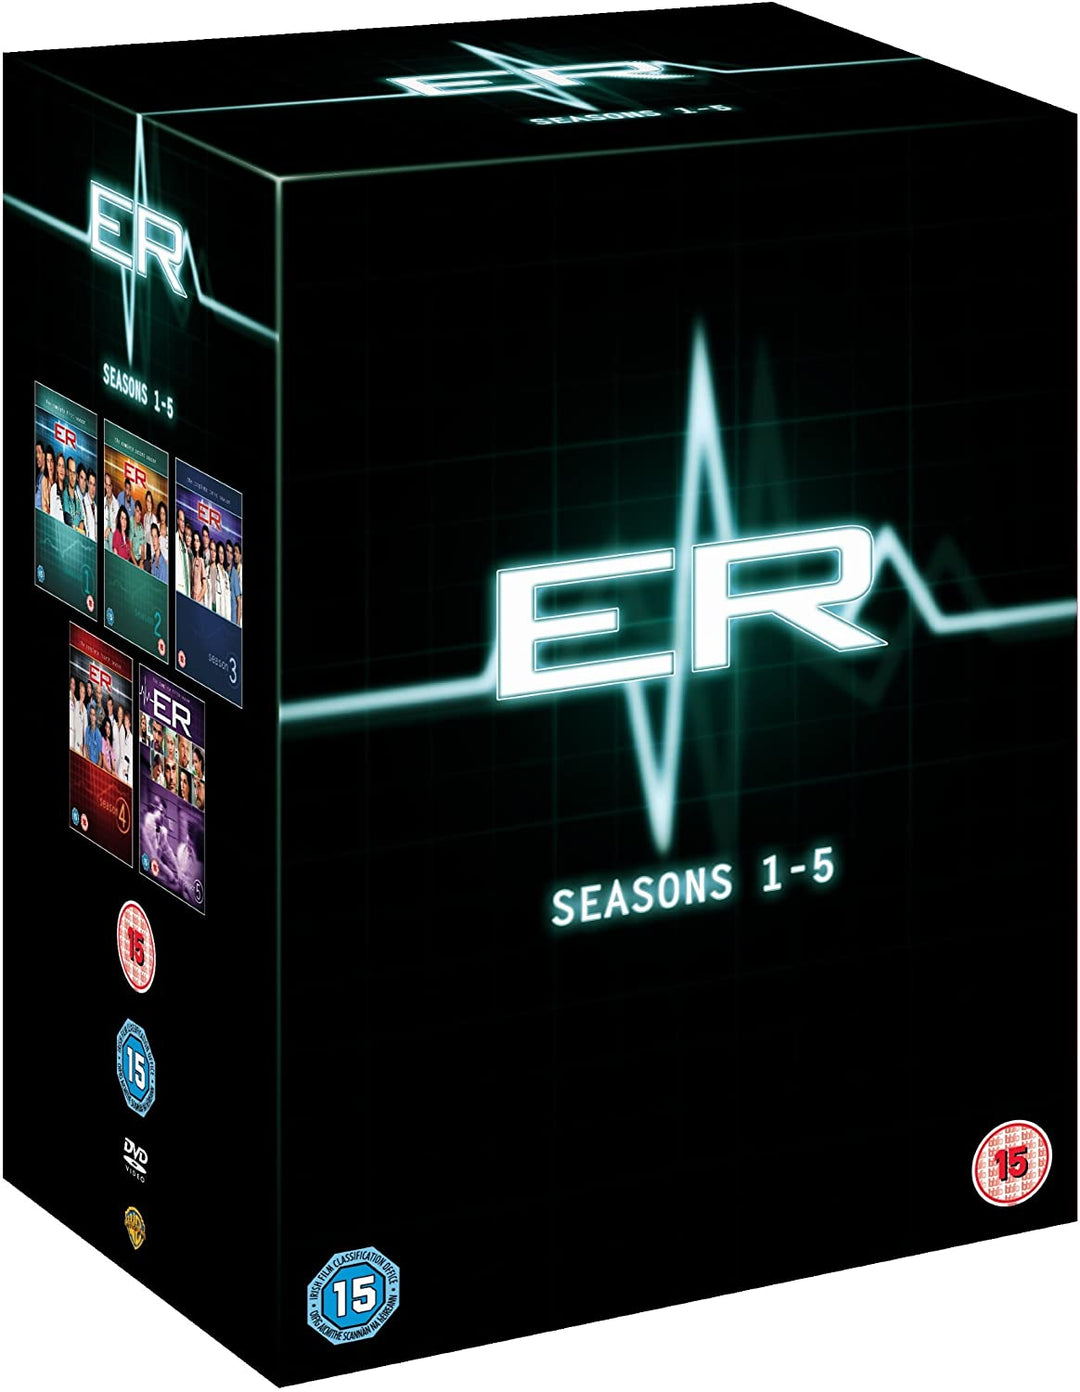 ER - Season 1-5 - Drama [DVD]